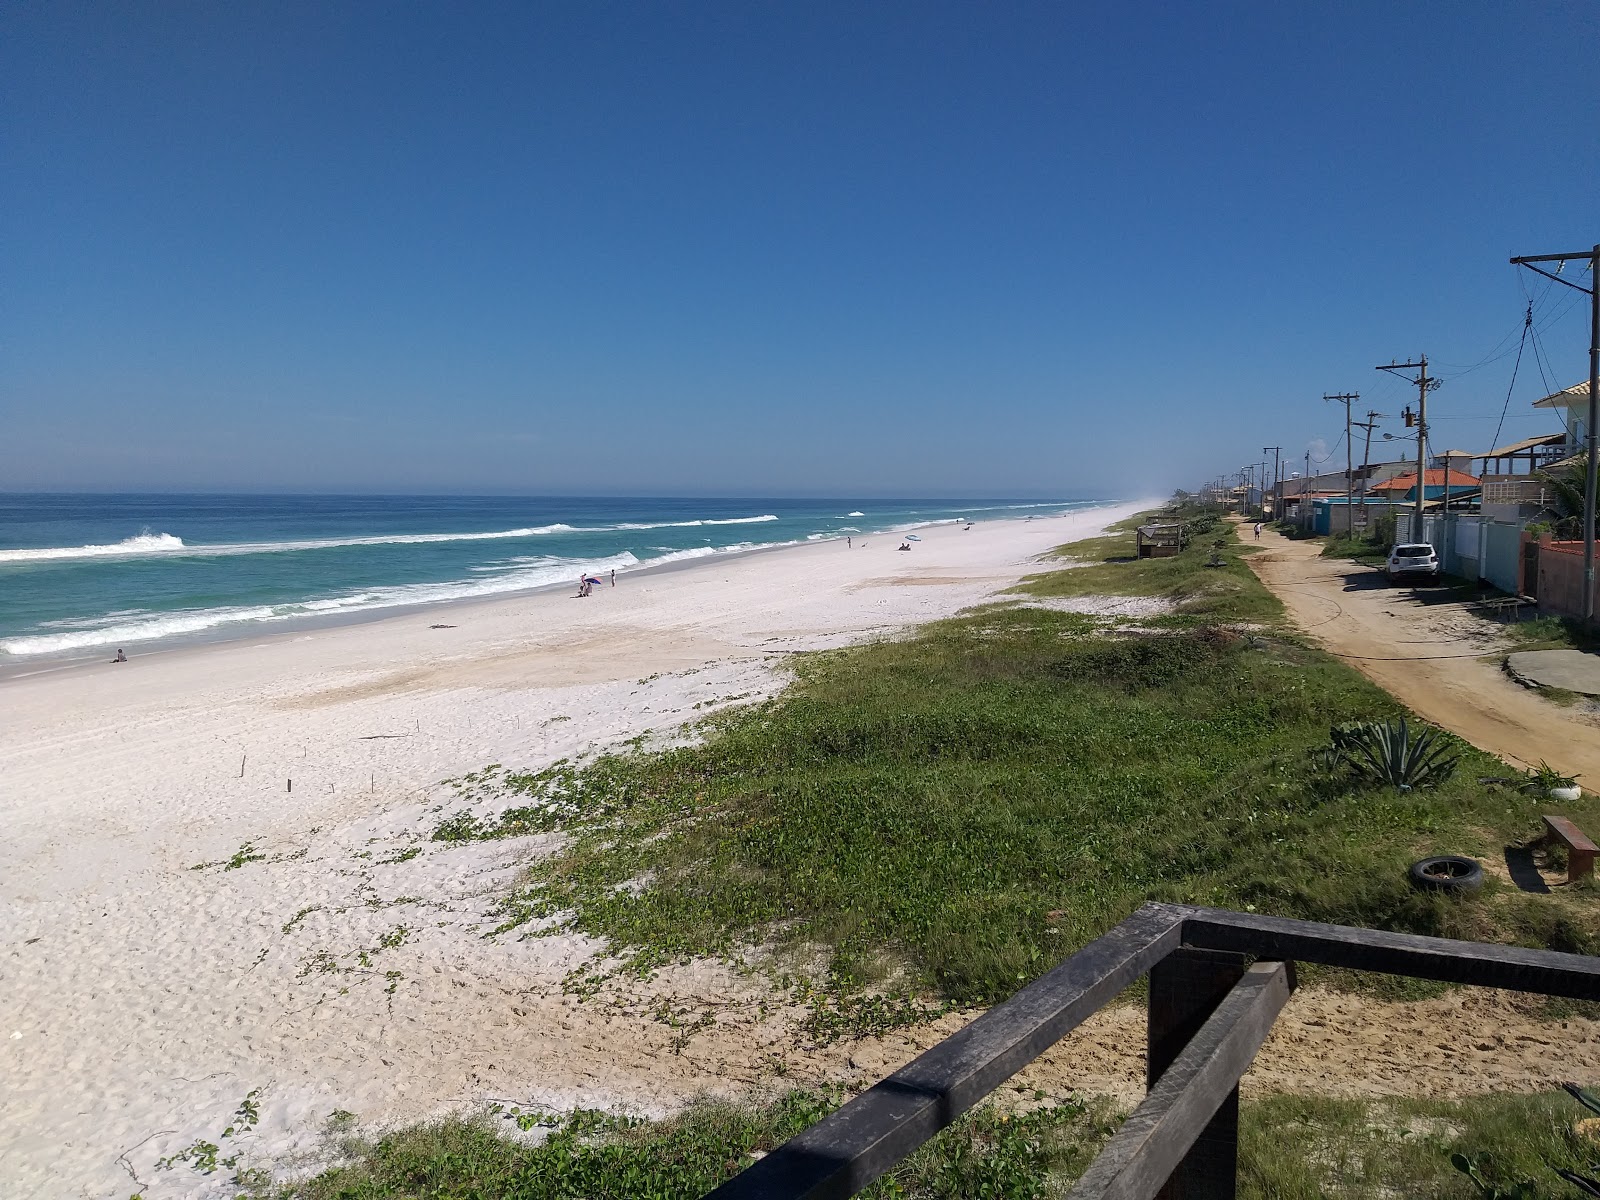 Zdjęcie Praia Grande de Figueira z poziomem czystości wysoki